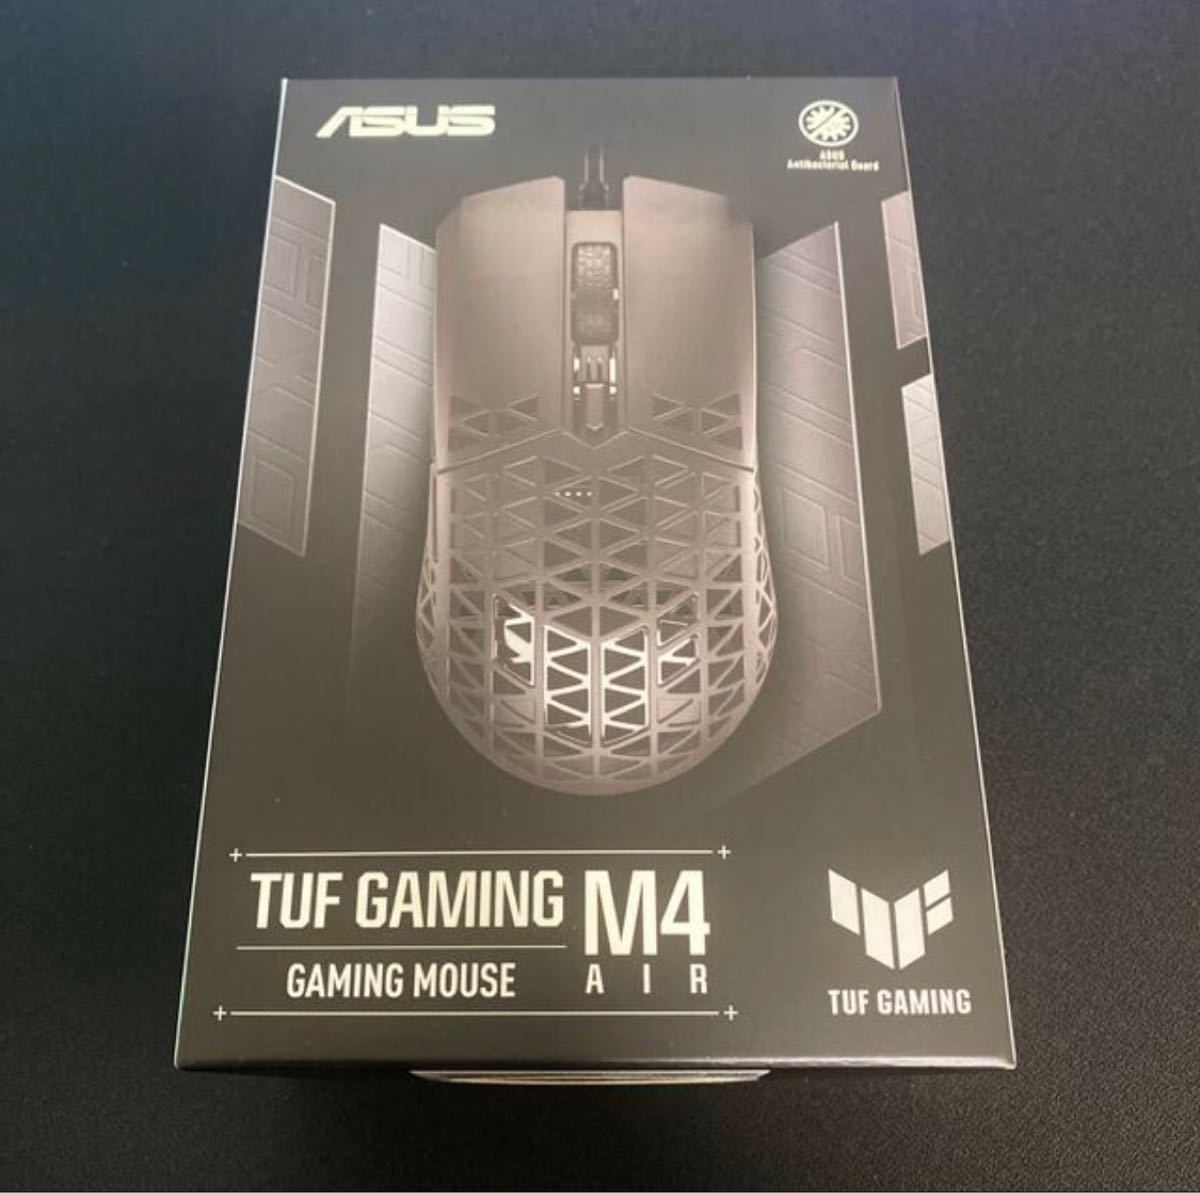 【新品未開封】ASUS ゲーミングマウス P307 TUF Gaming M4 Air 有線